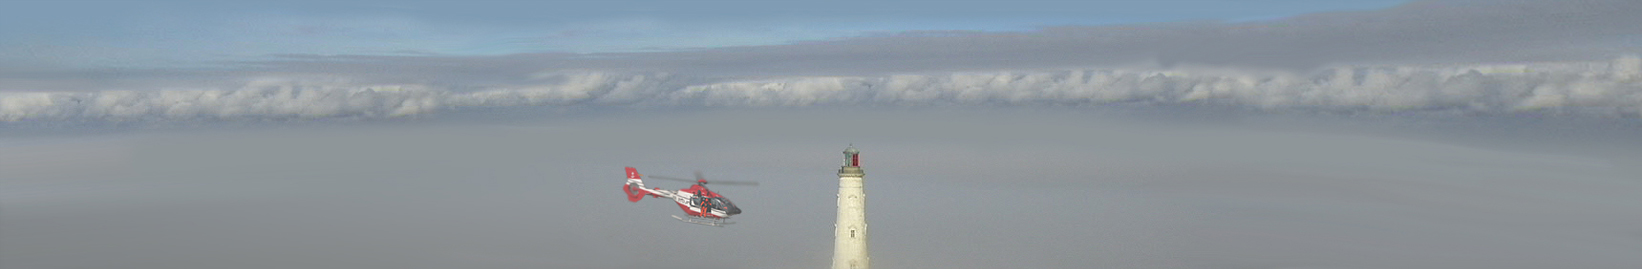 Pilote-BX : Hélicoptère au phare de Cordouan